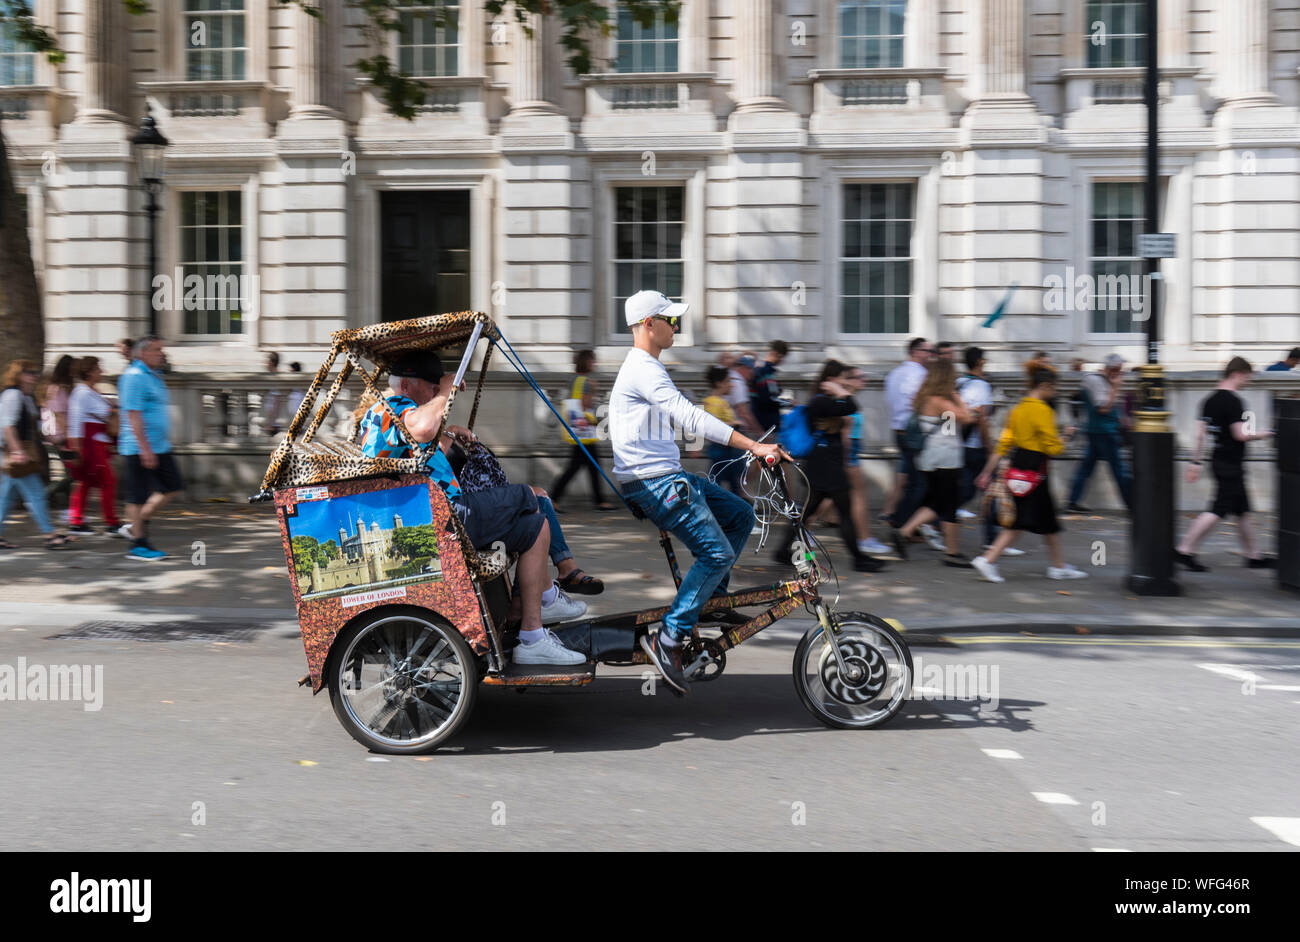 Touristen als Passagiere auf einem Sightseeing Fahrt in einem 3 Rad Rikscha oder Fahrradrikscha im Parlament Steet, Westminster, London, England, UK. Stockfoto